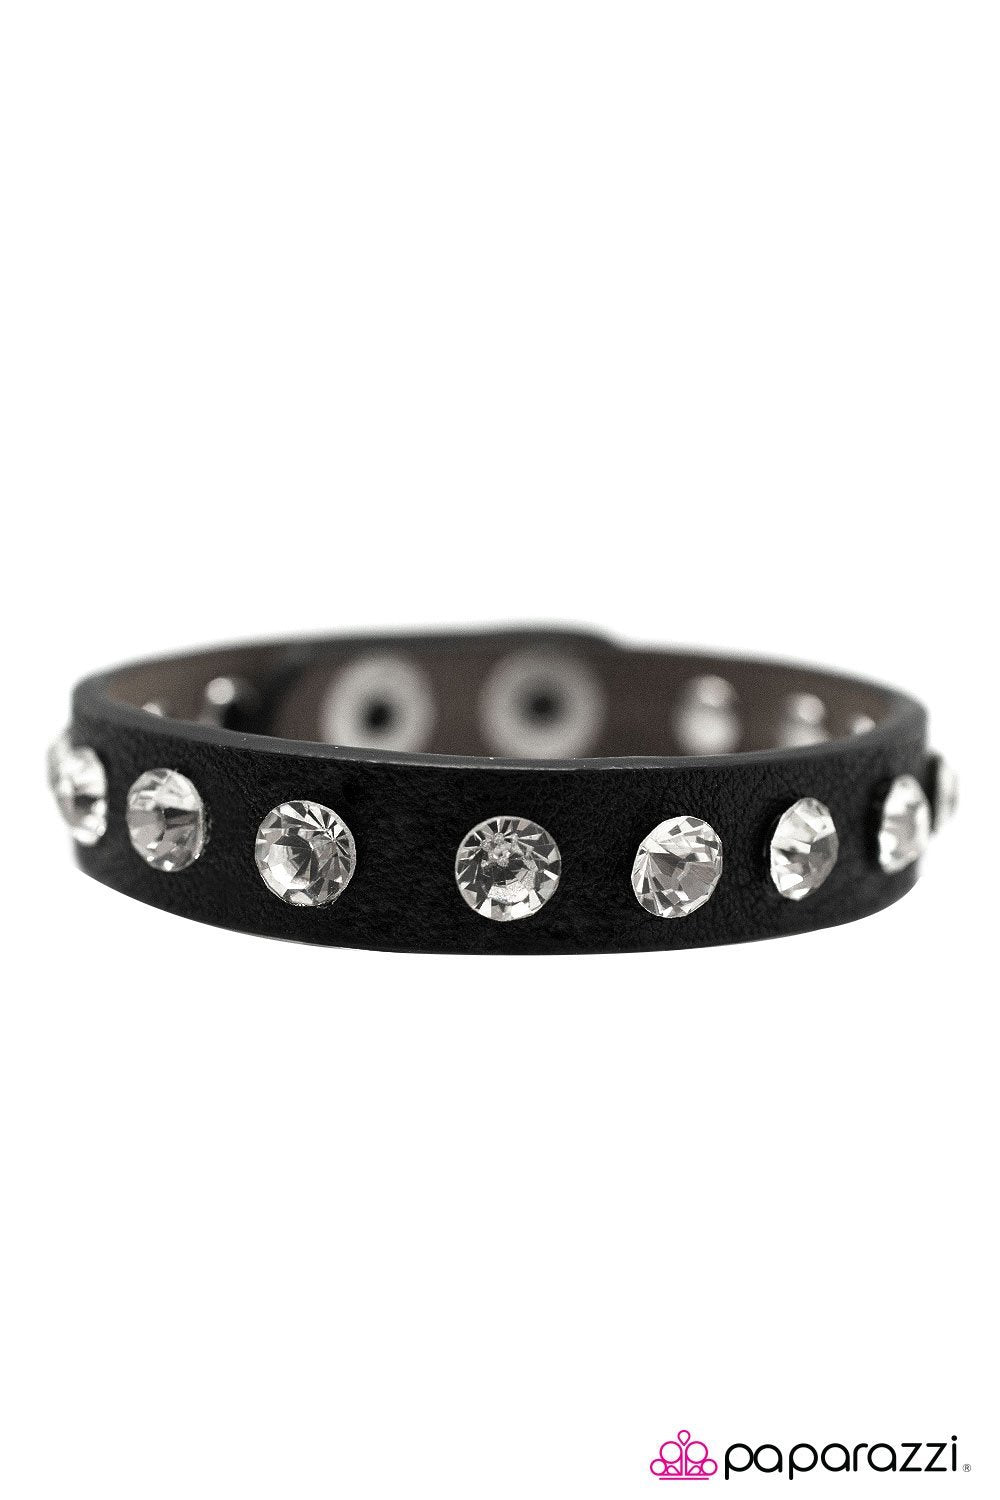 No Glitz, No Glory Black and White Rhinestone Urban Wrap Snap Bracelet - Paparazzi Accessories-CarasShop.com - $5 Jewelry by Cara Jewels